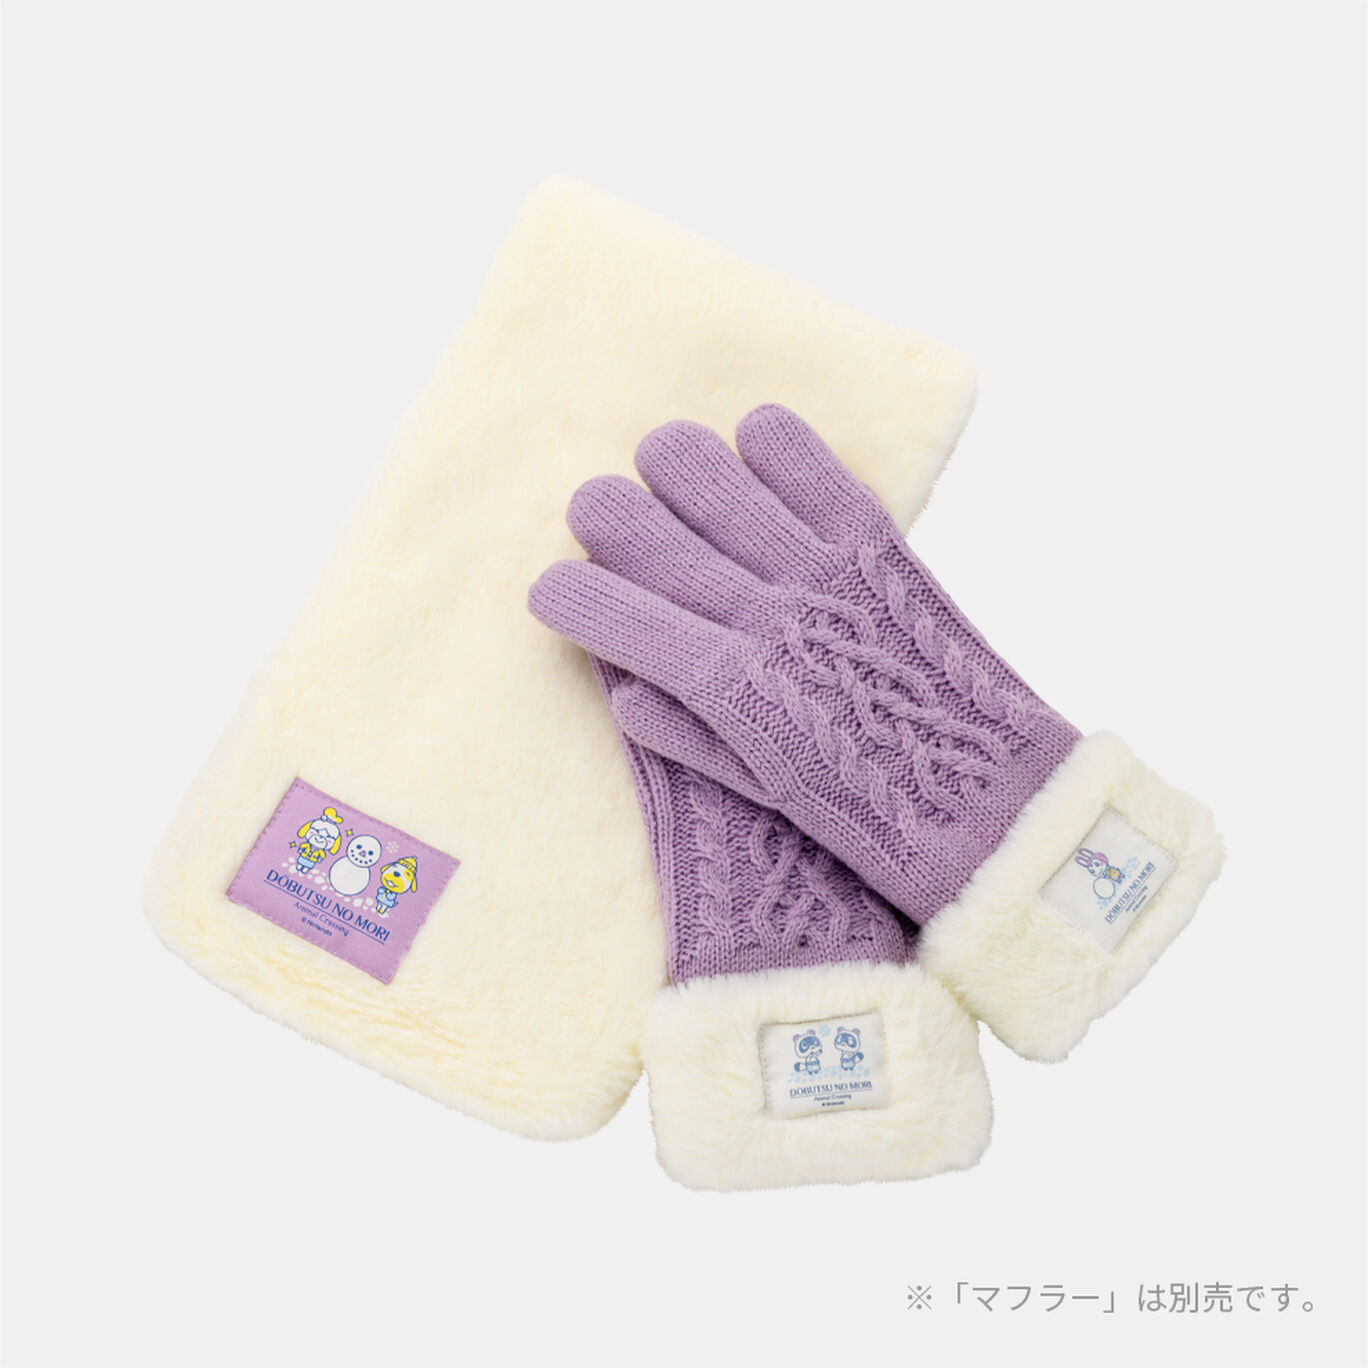 手袋 どうぶつの森【Nintendo TOKYO取り扱い商品】